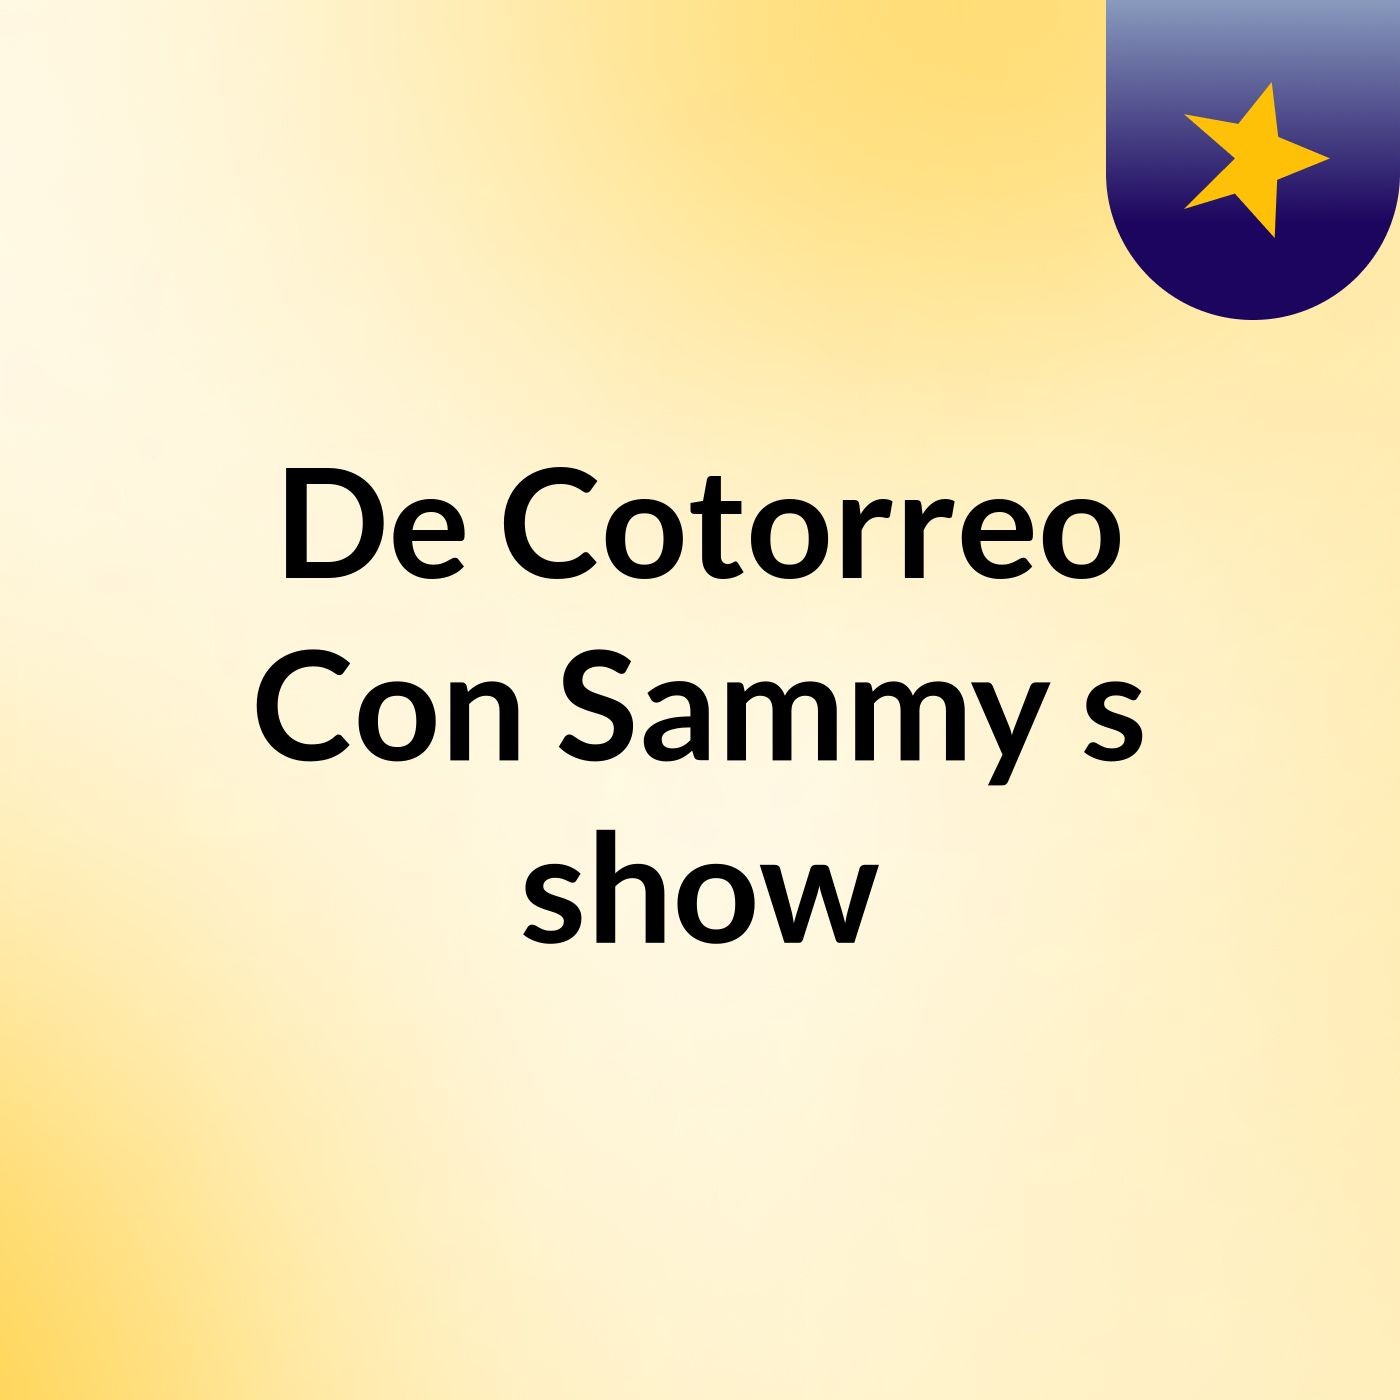 De Cotorreo Con Sammy's show